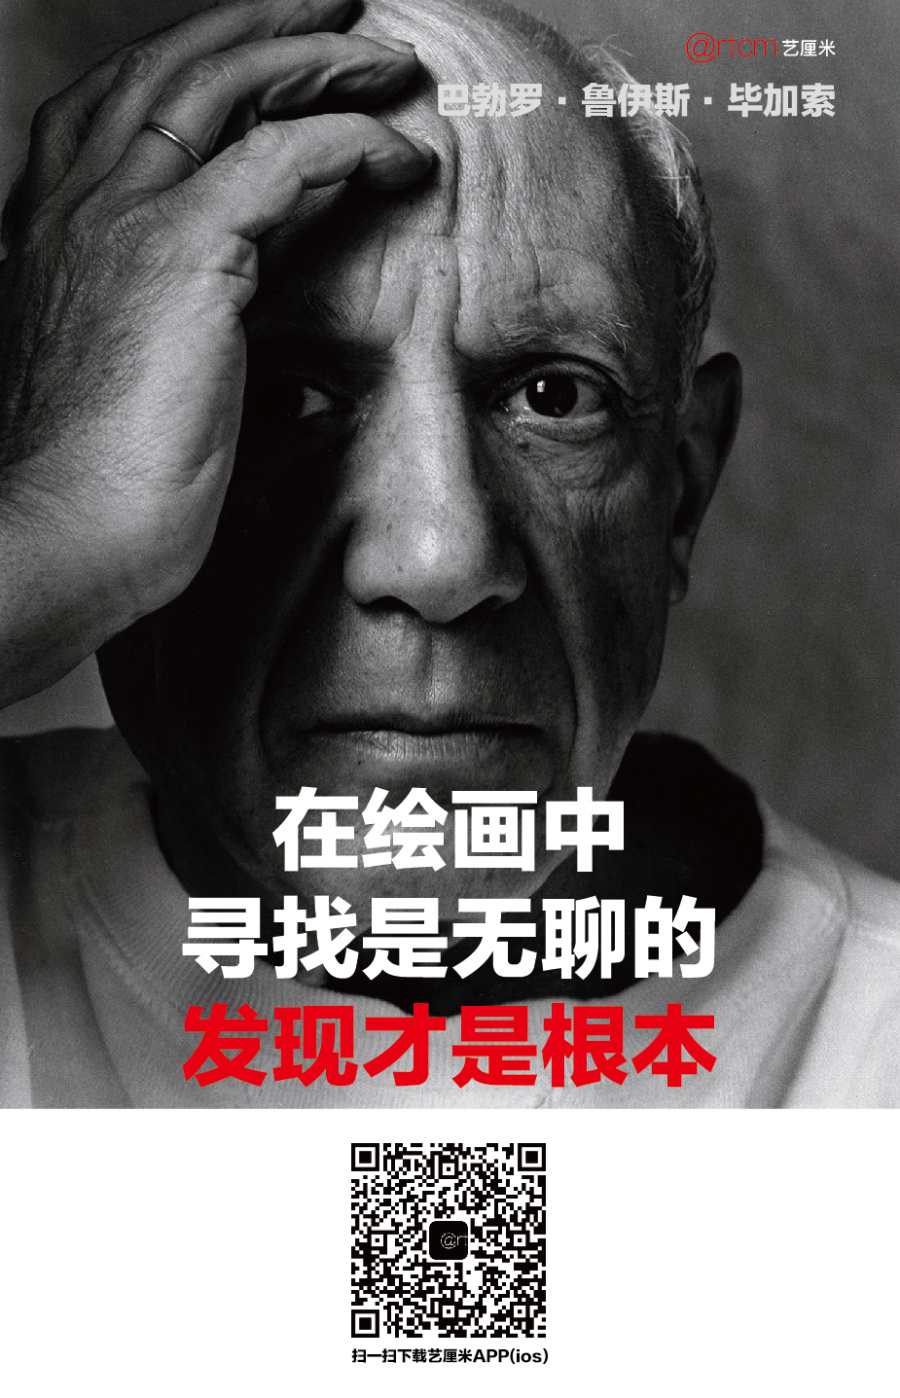 公司APP推广海报|海报|平面|qinchengzhen - 原